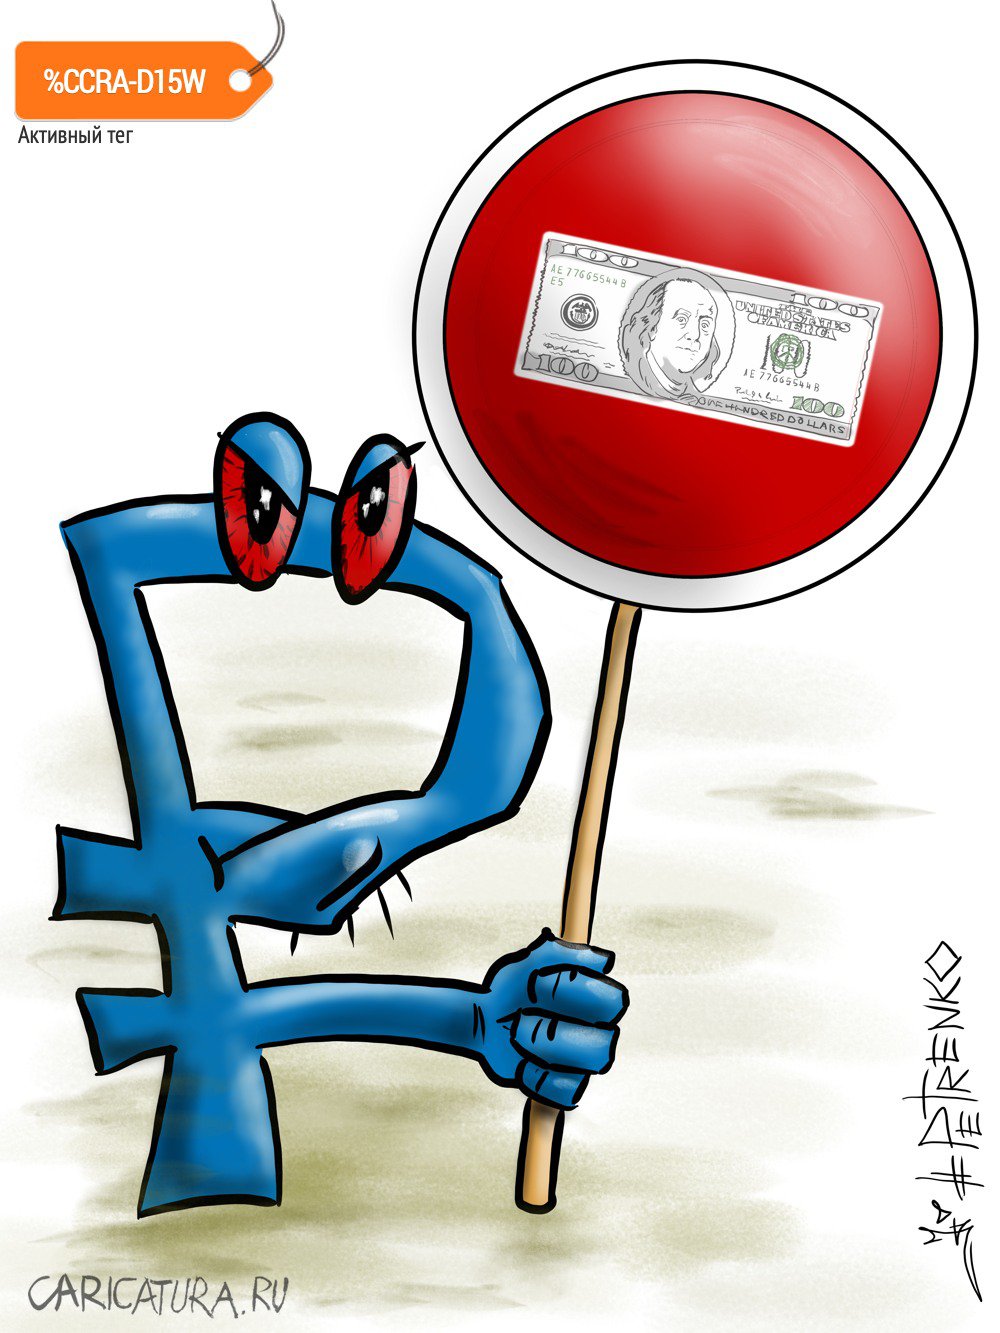 Карикатура "Stop dollars...", Андрей Петренко